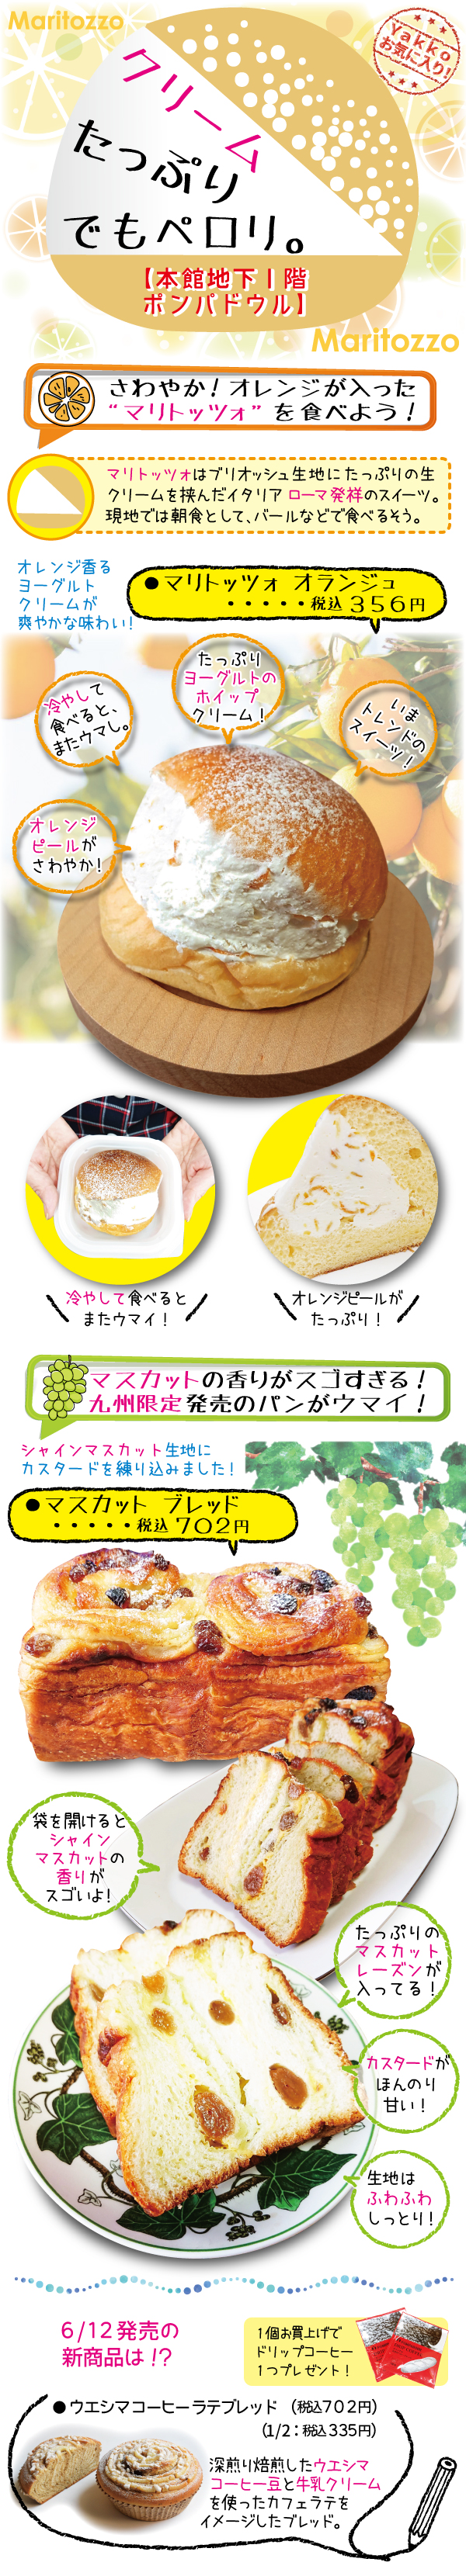 594円 【2021福袋】 スライス柿羊羹 15枚入り 柿を使ったお菓子